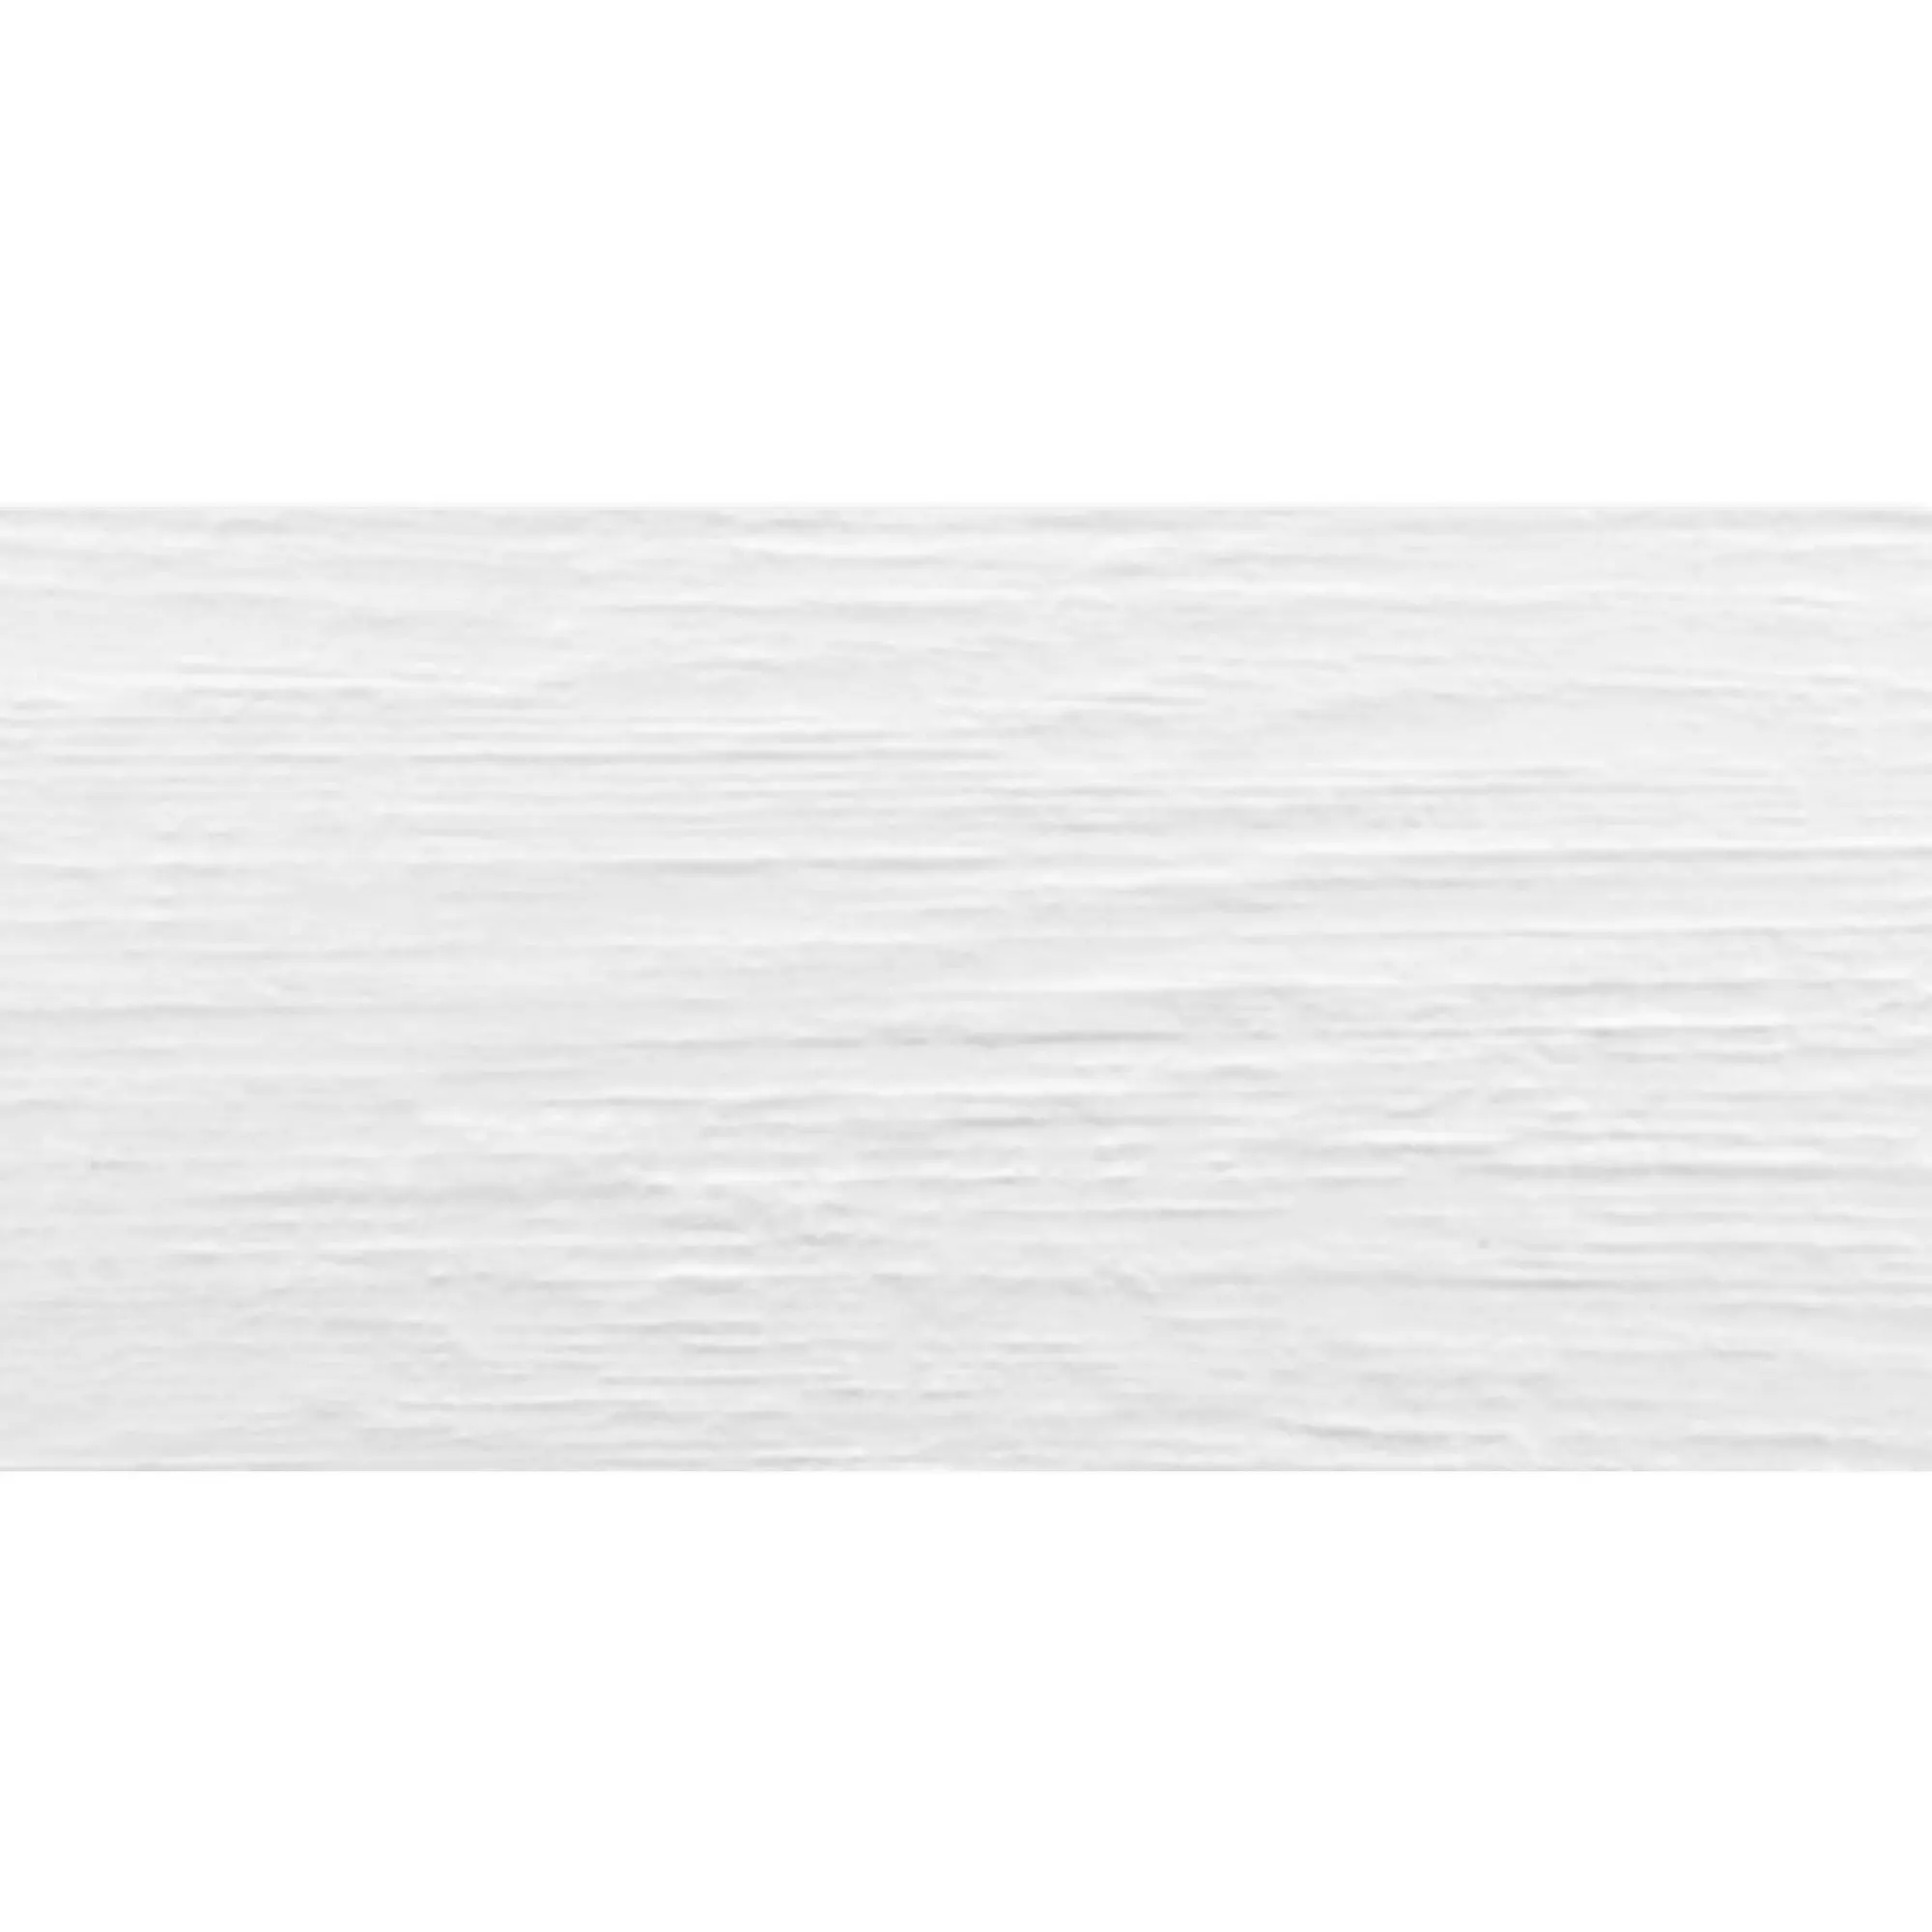 Próbka Płytki Ścienne Varkaus Biały Matowy 30x60cm